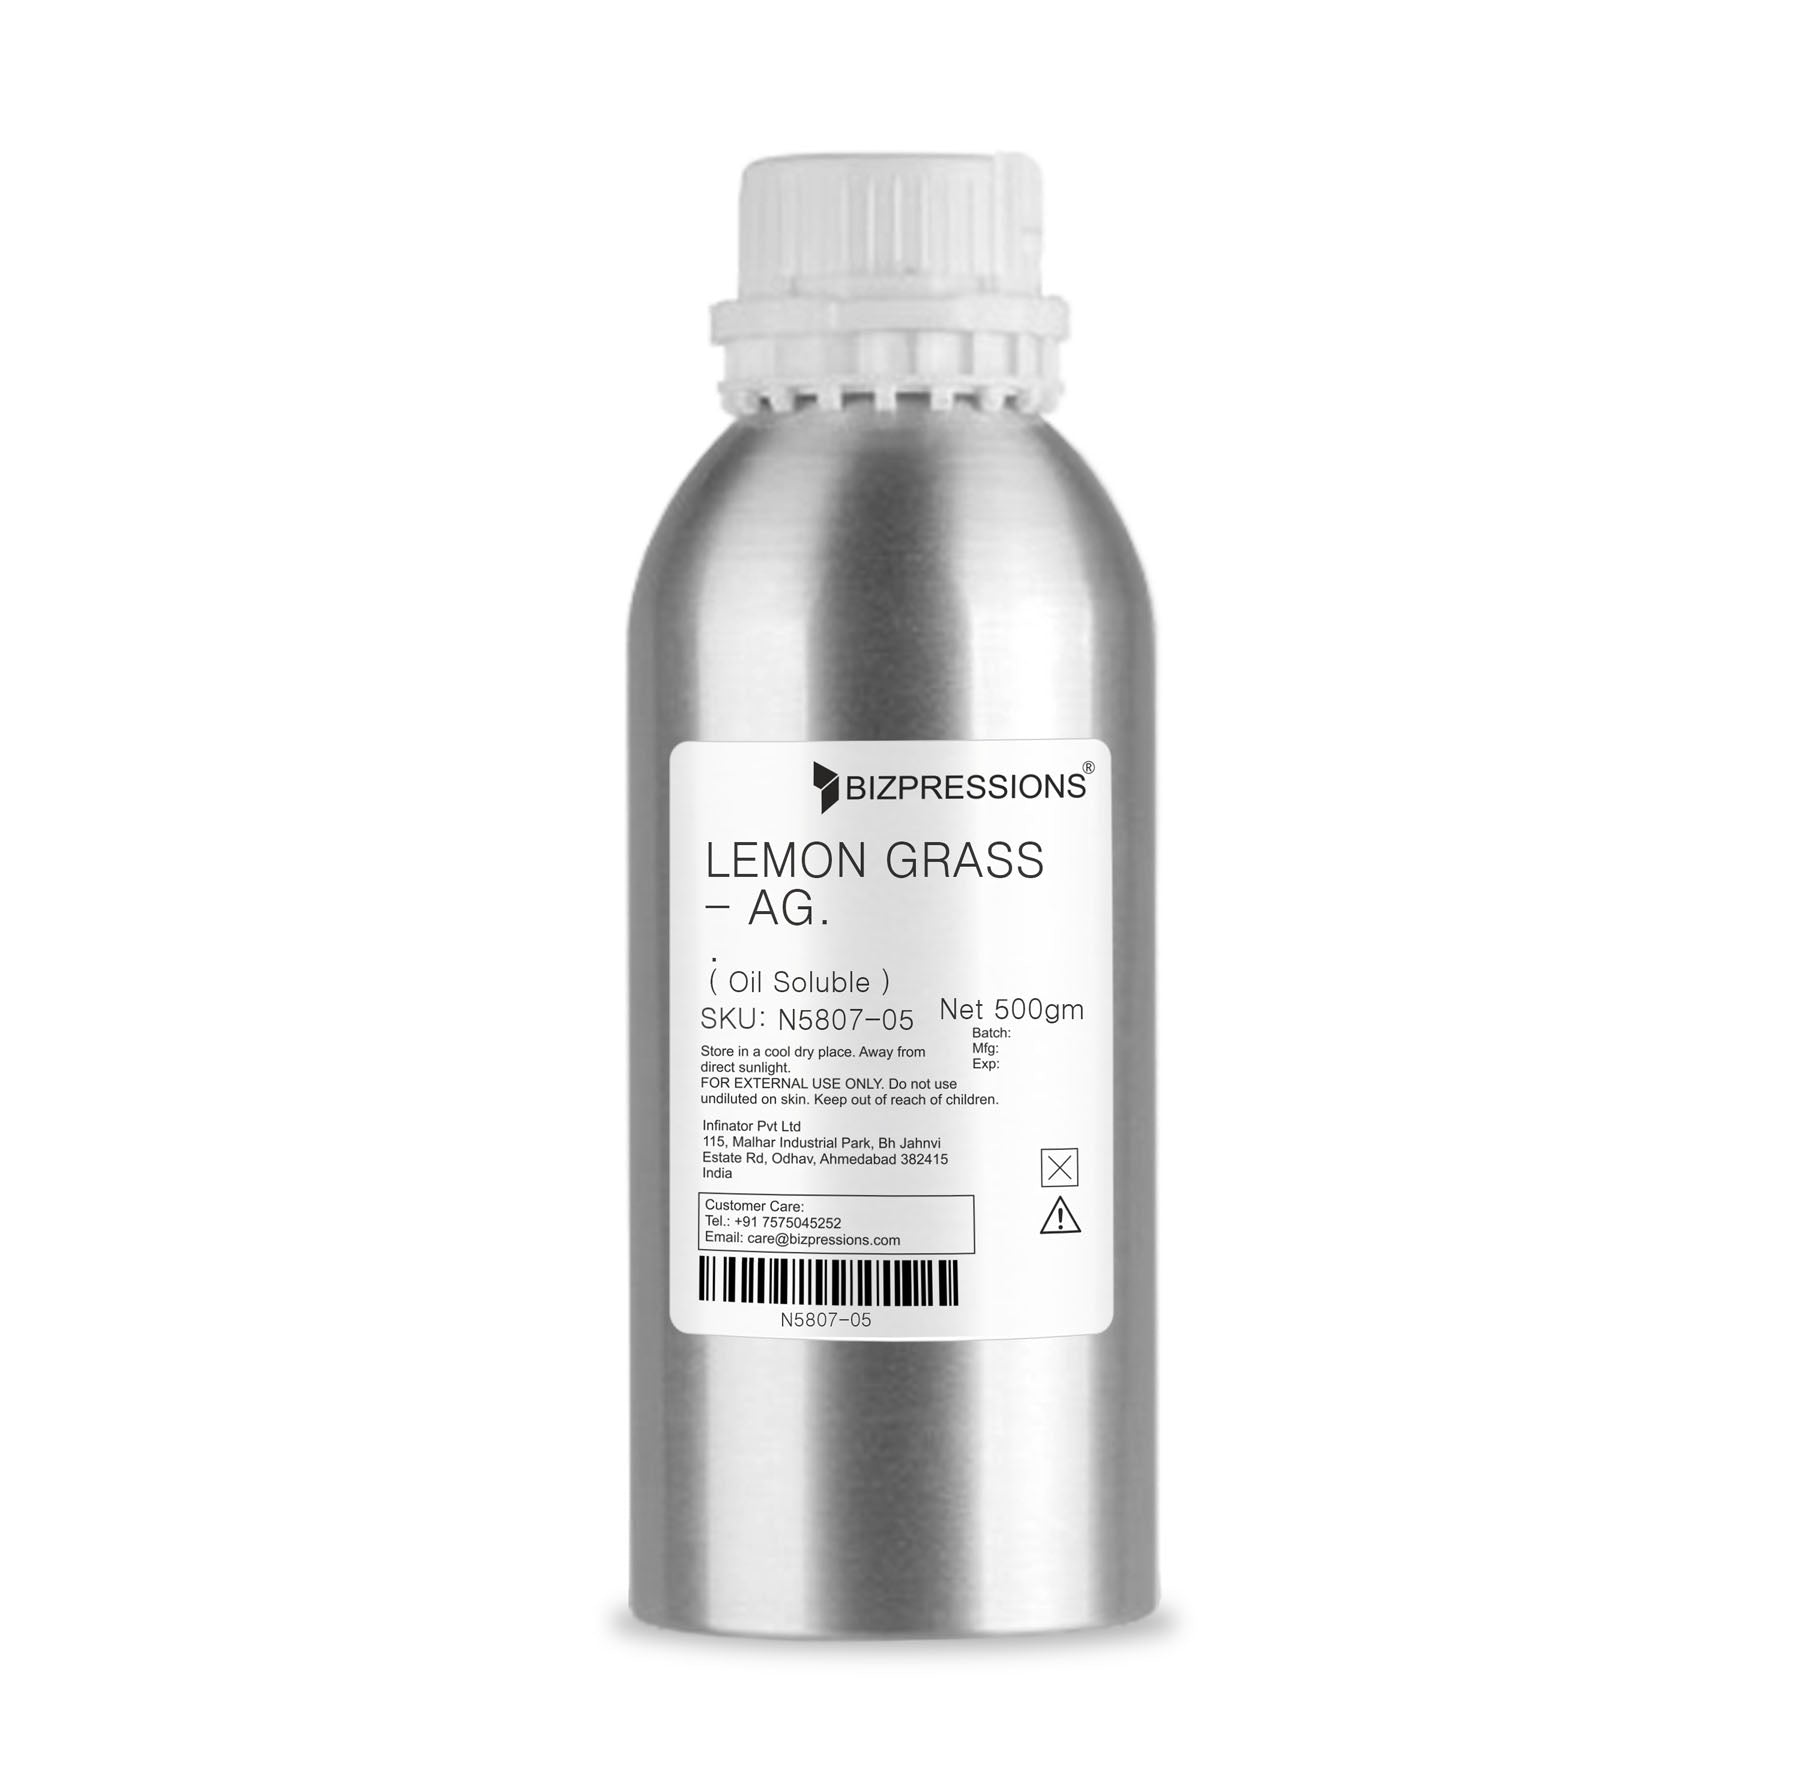 LEMON GRASS - AG. - Fragrance ( Oil Soluble ) - 500 gm